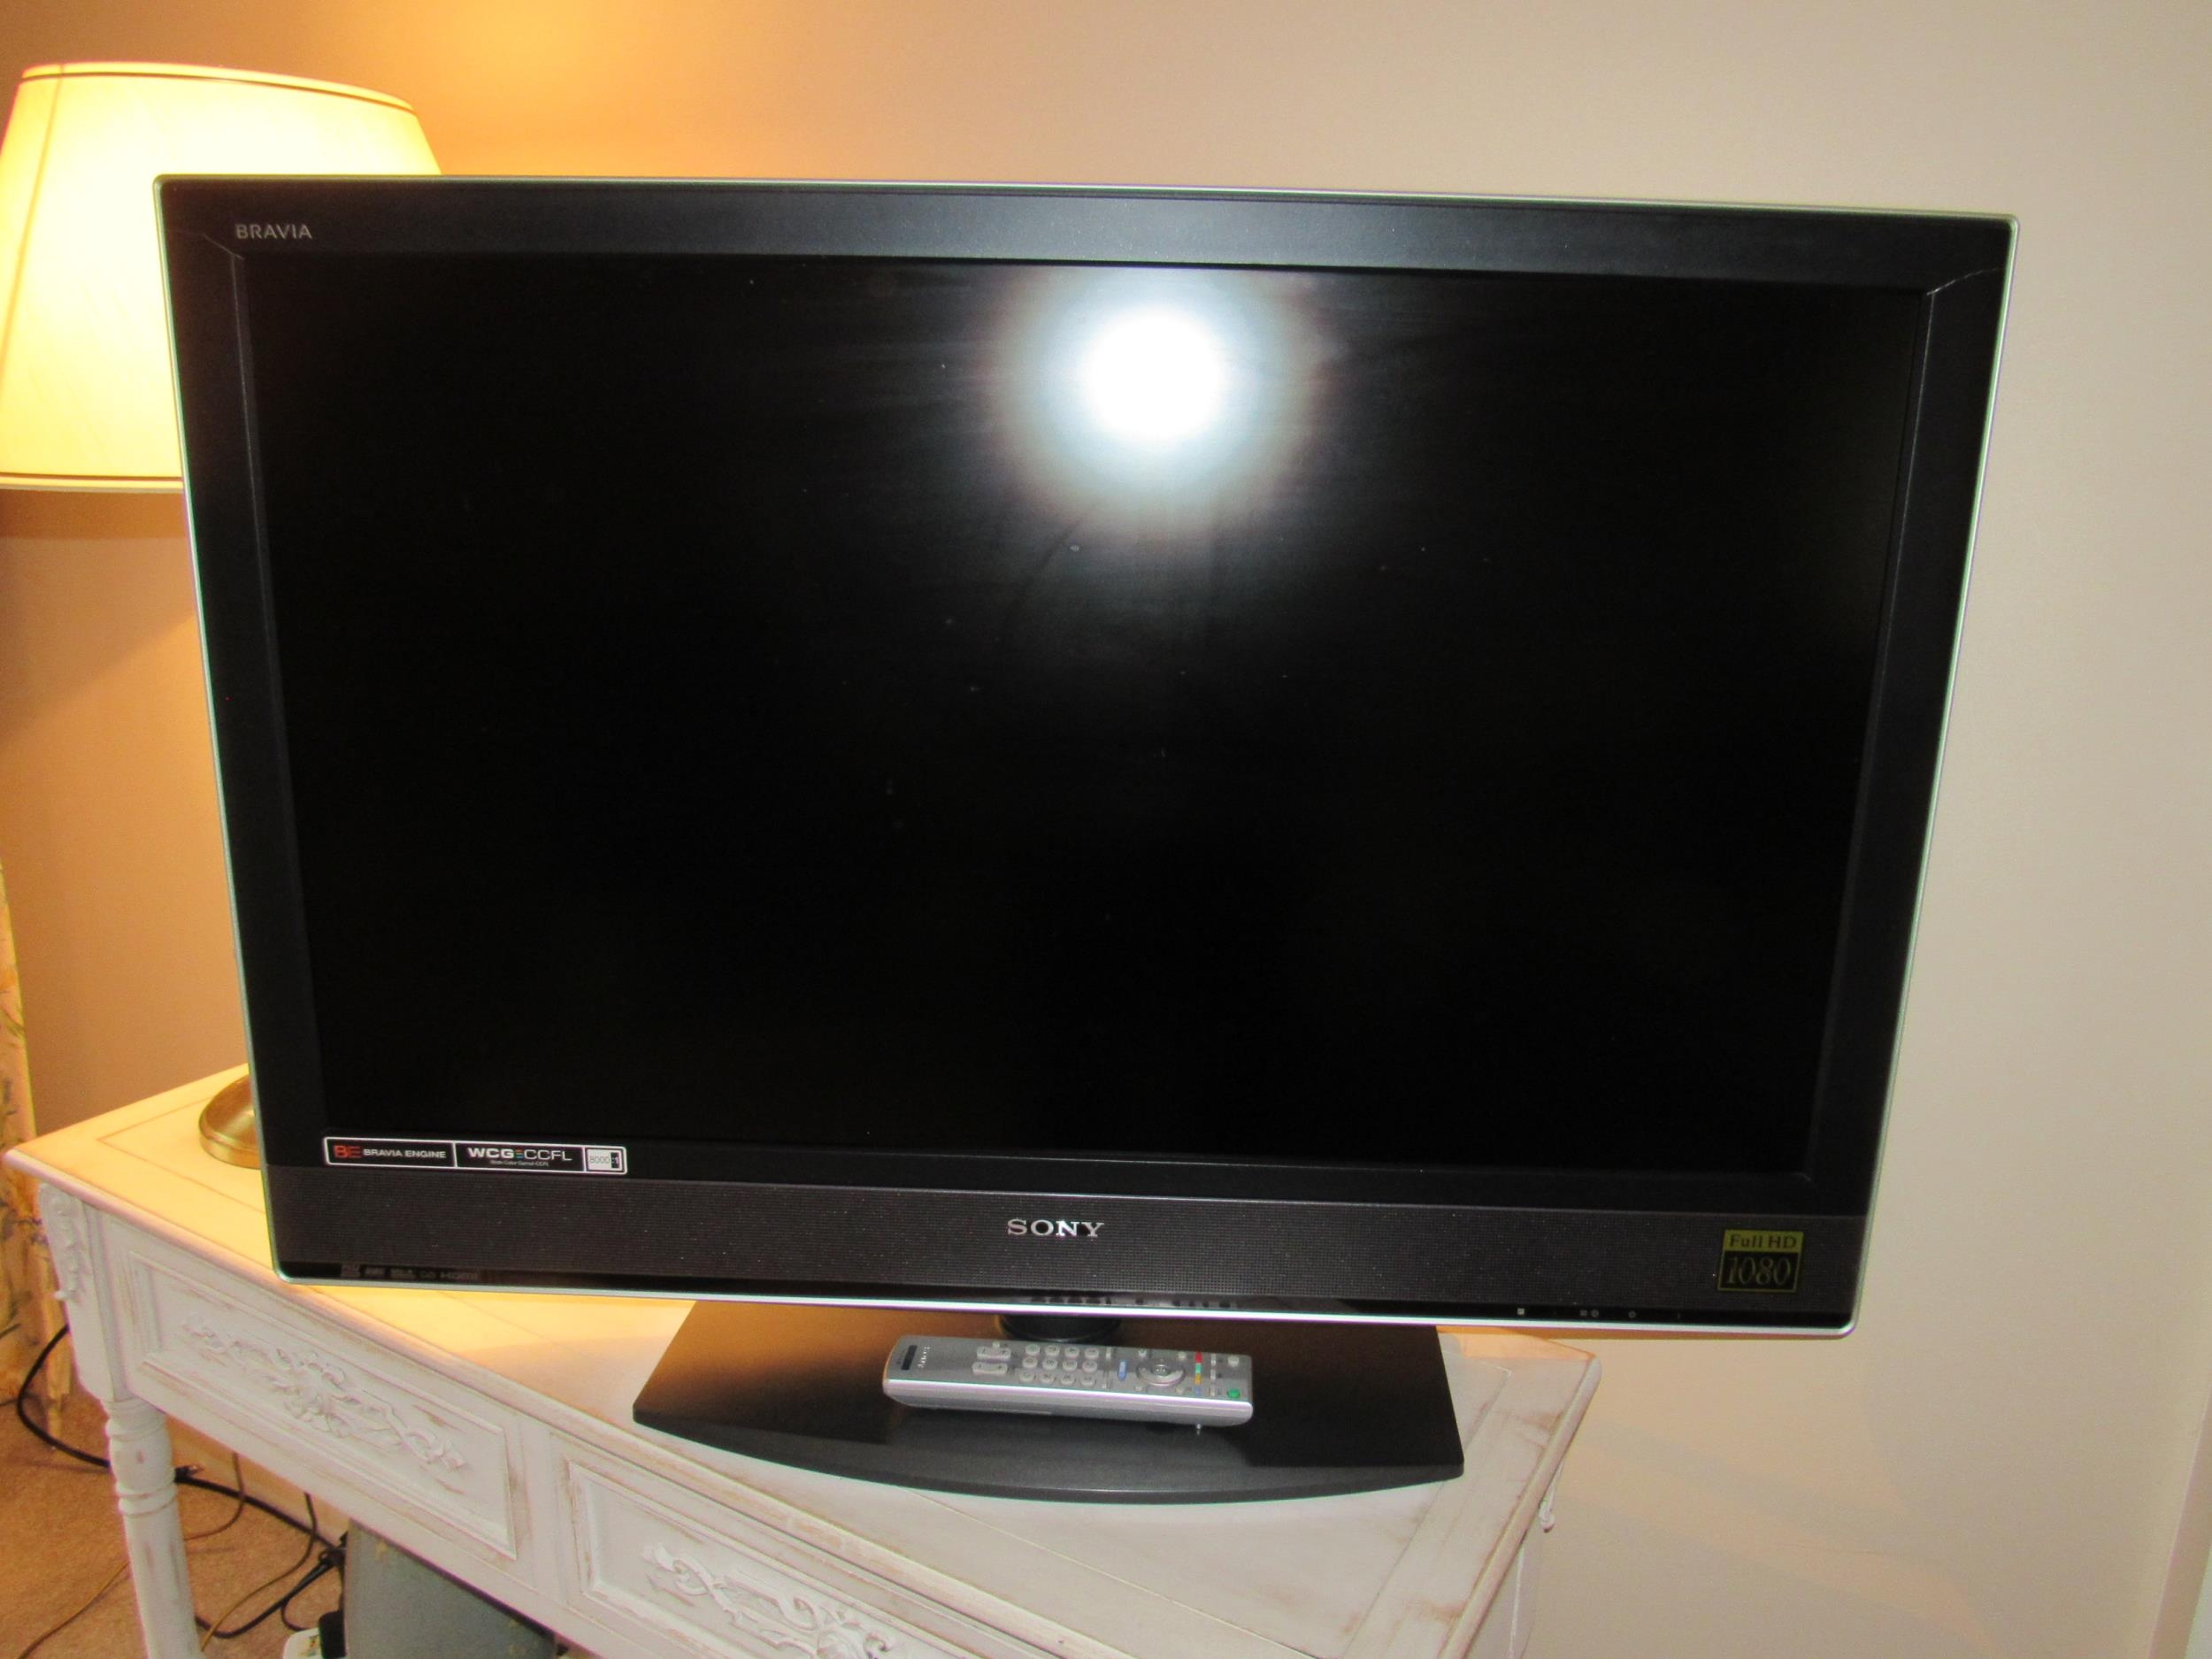 Bravia Sony LCD Colour TV model KDL-40W2000